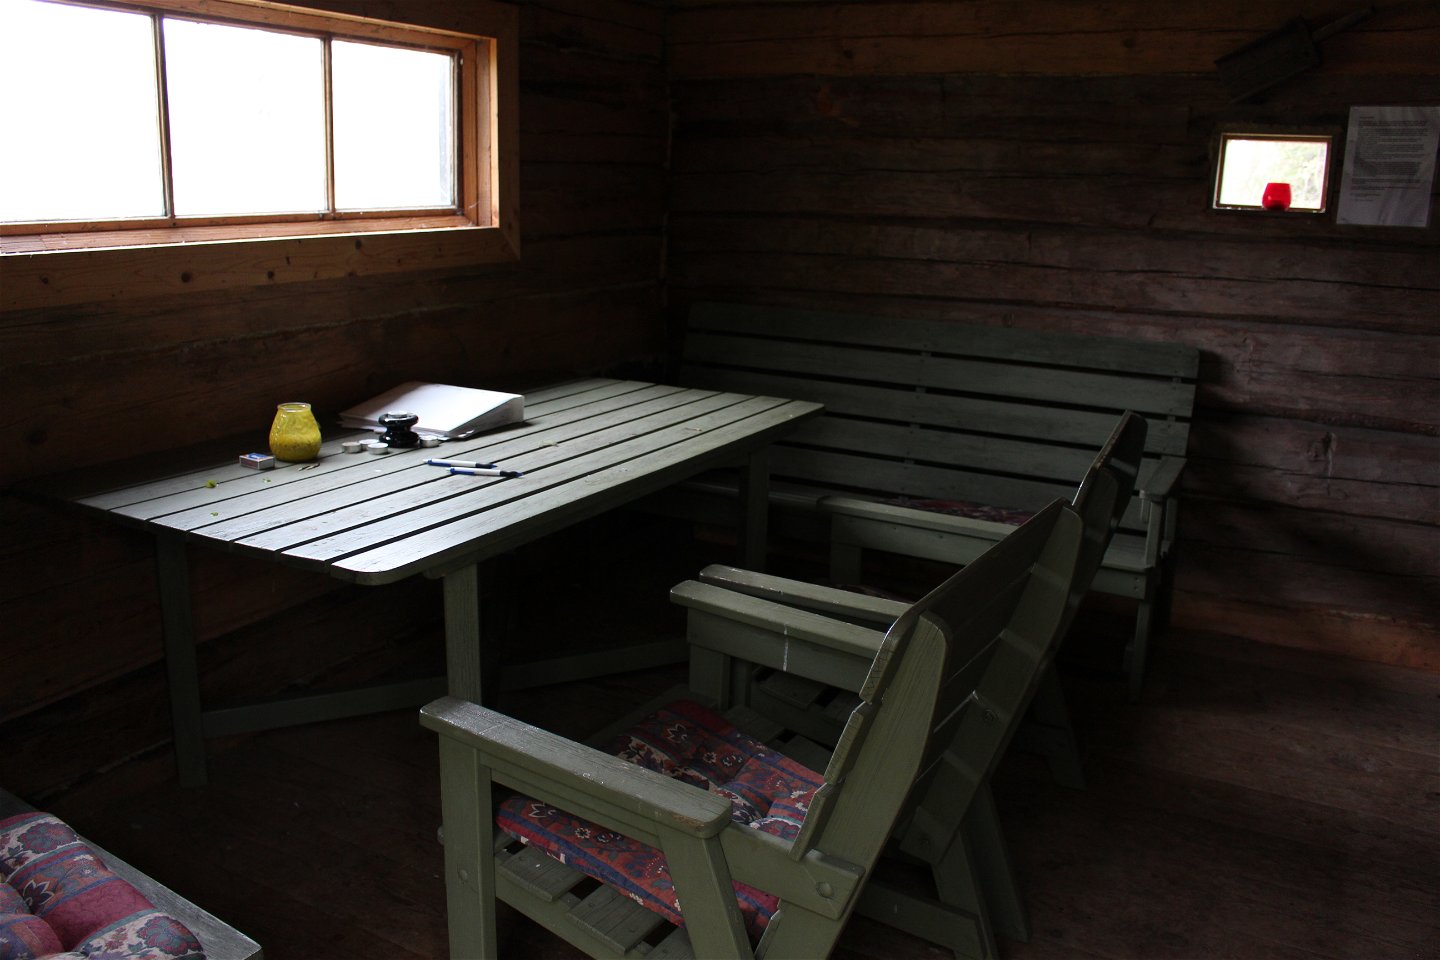 Vid ett smalt fönster står ett bord, två stolar och sittbänkar. På bordet finns pennor, värmeljus och en pärm.